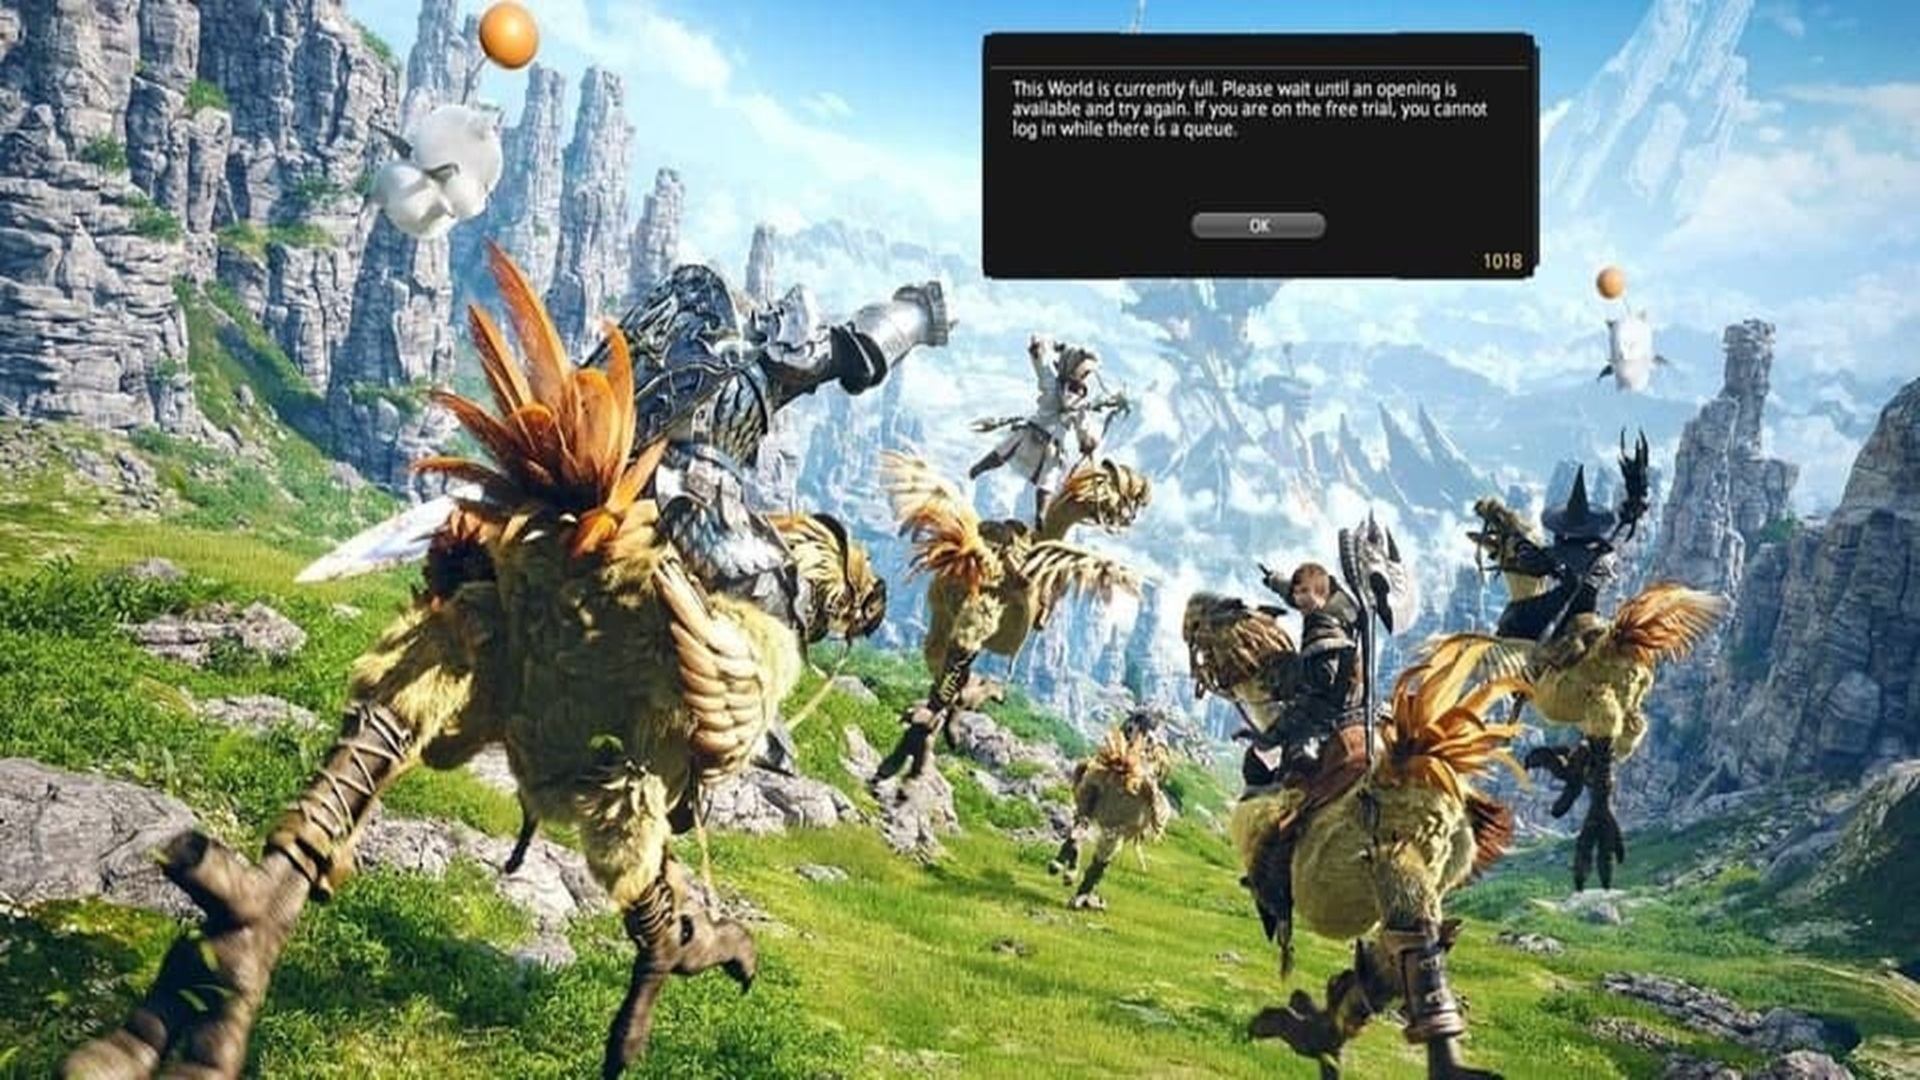 Los jugadores de prueba gratuita de Final Fantasy 14 pueden tener problemas para iniciar sesión por un tiempo, GamersRD